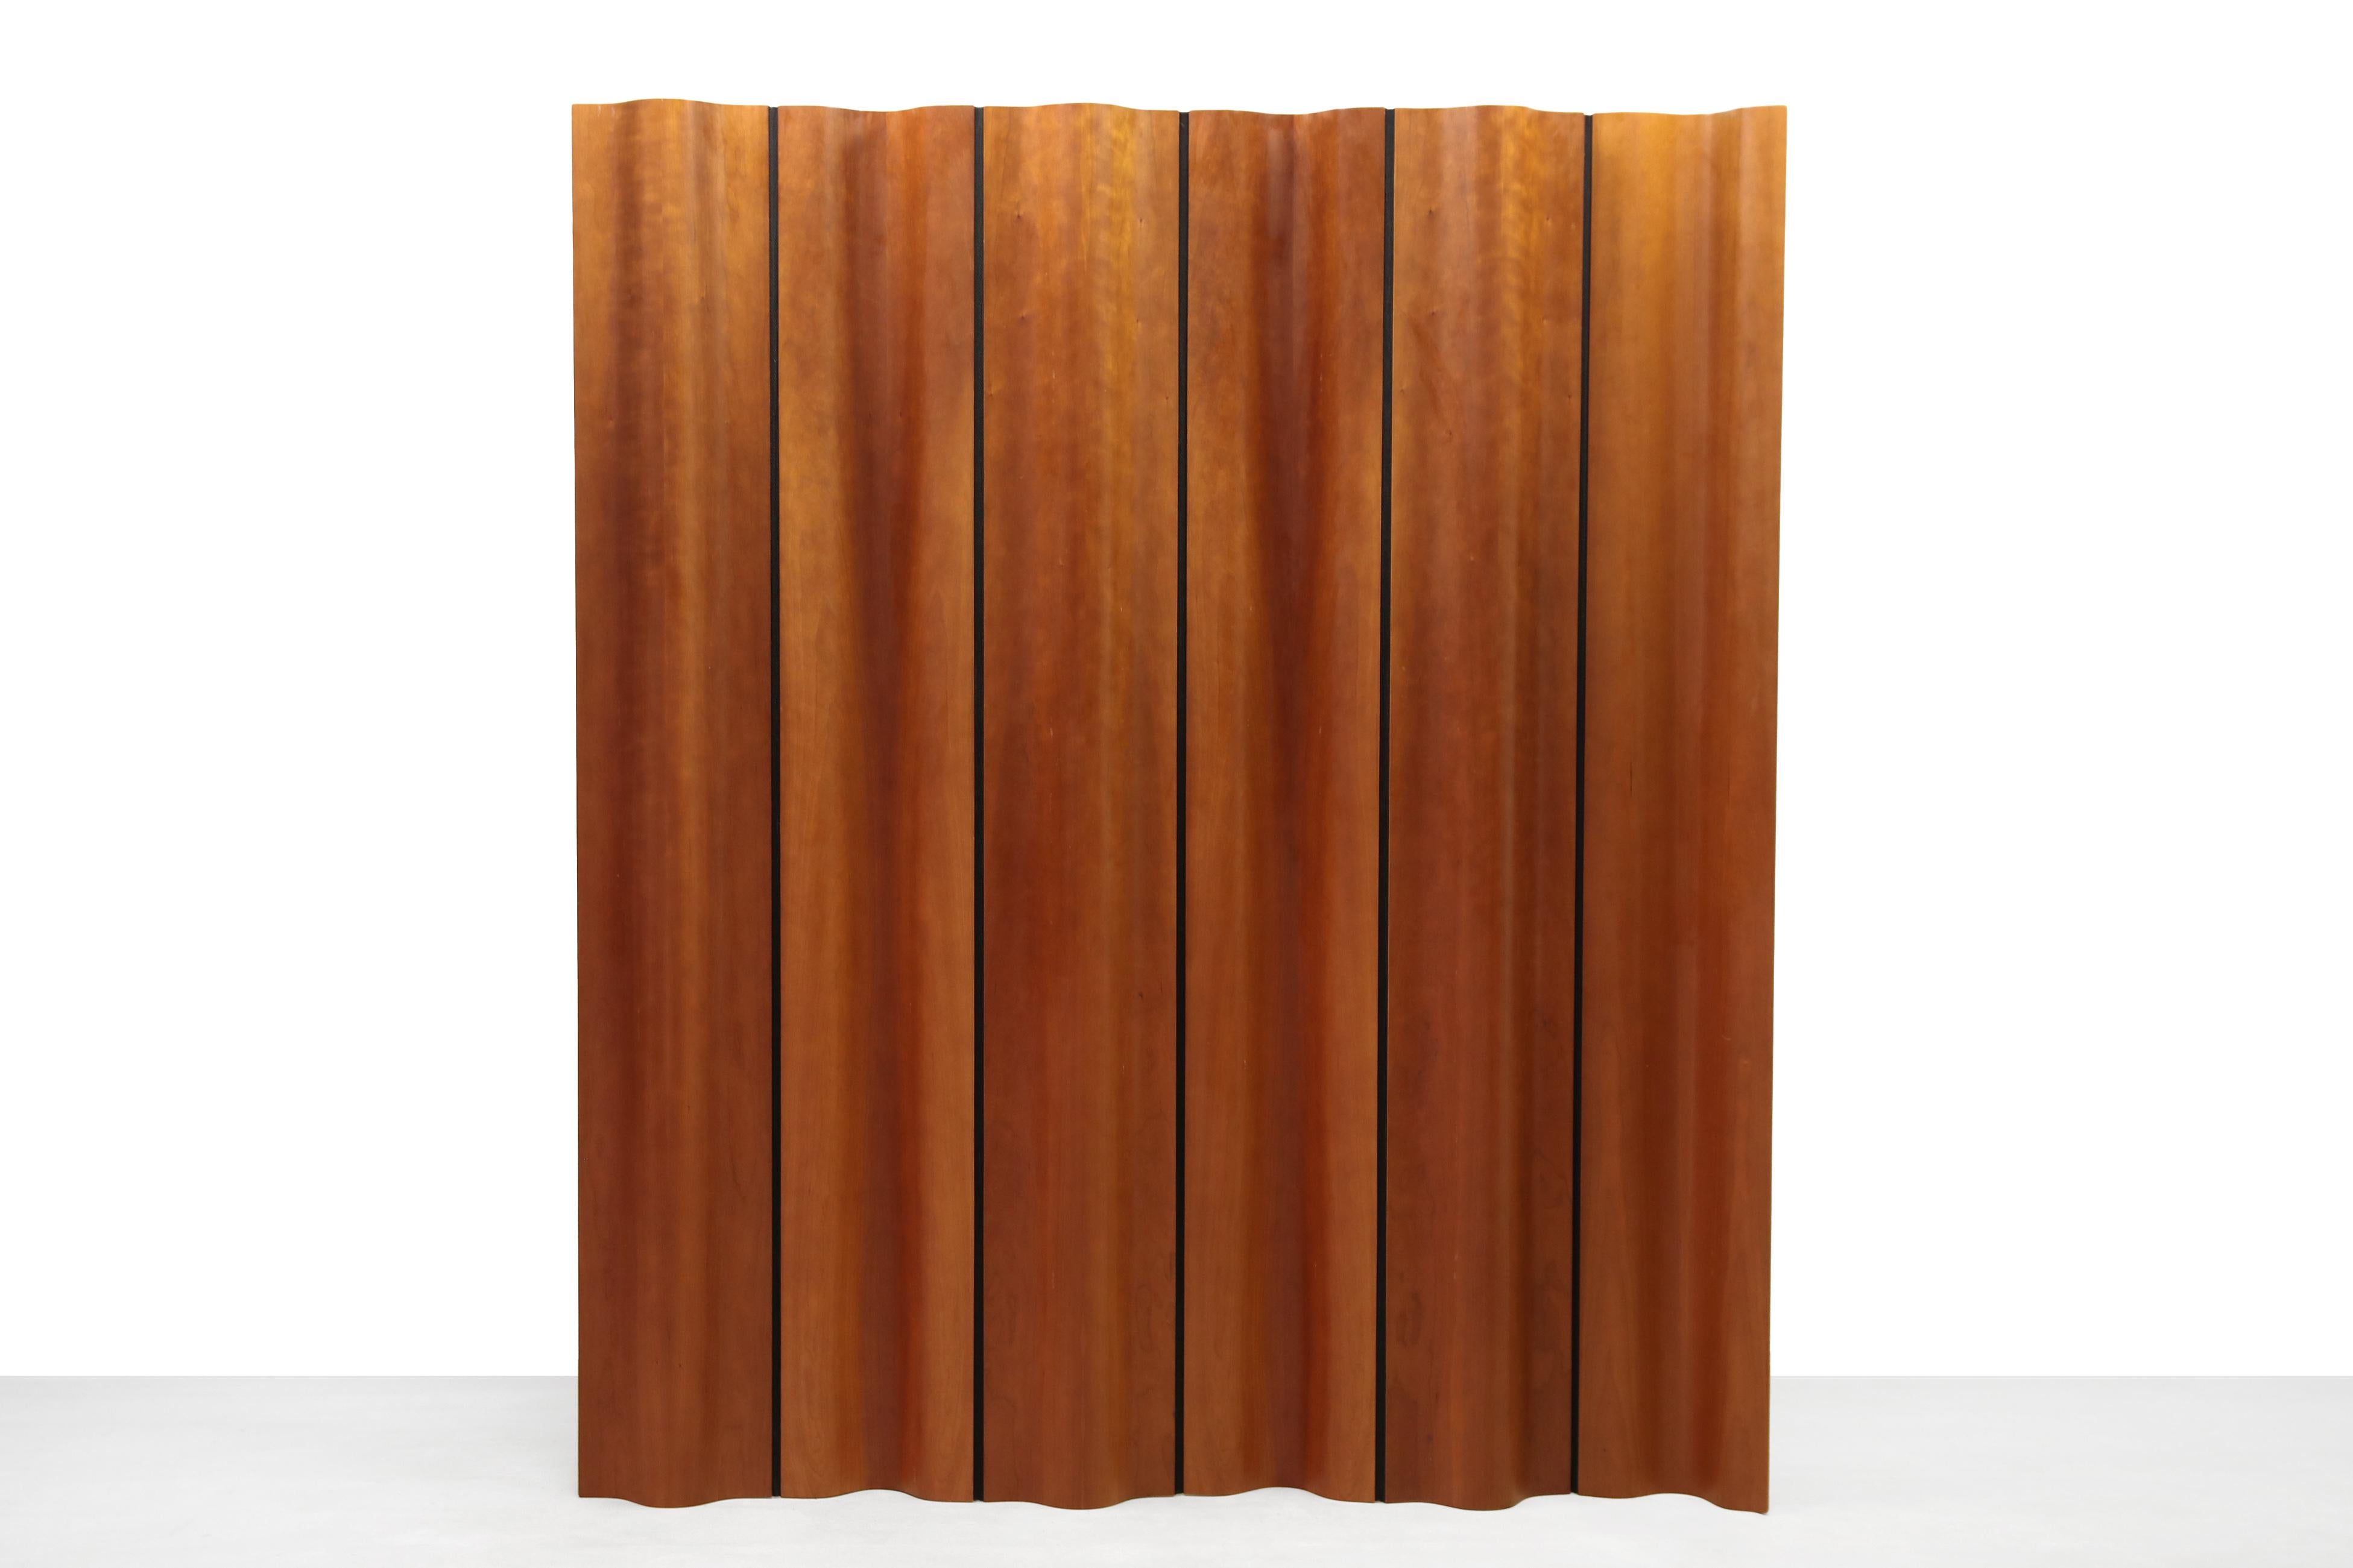 Molded Eames Plywood Folding Room Divider for Herman Miller